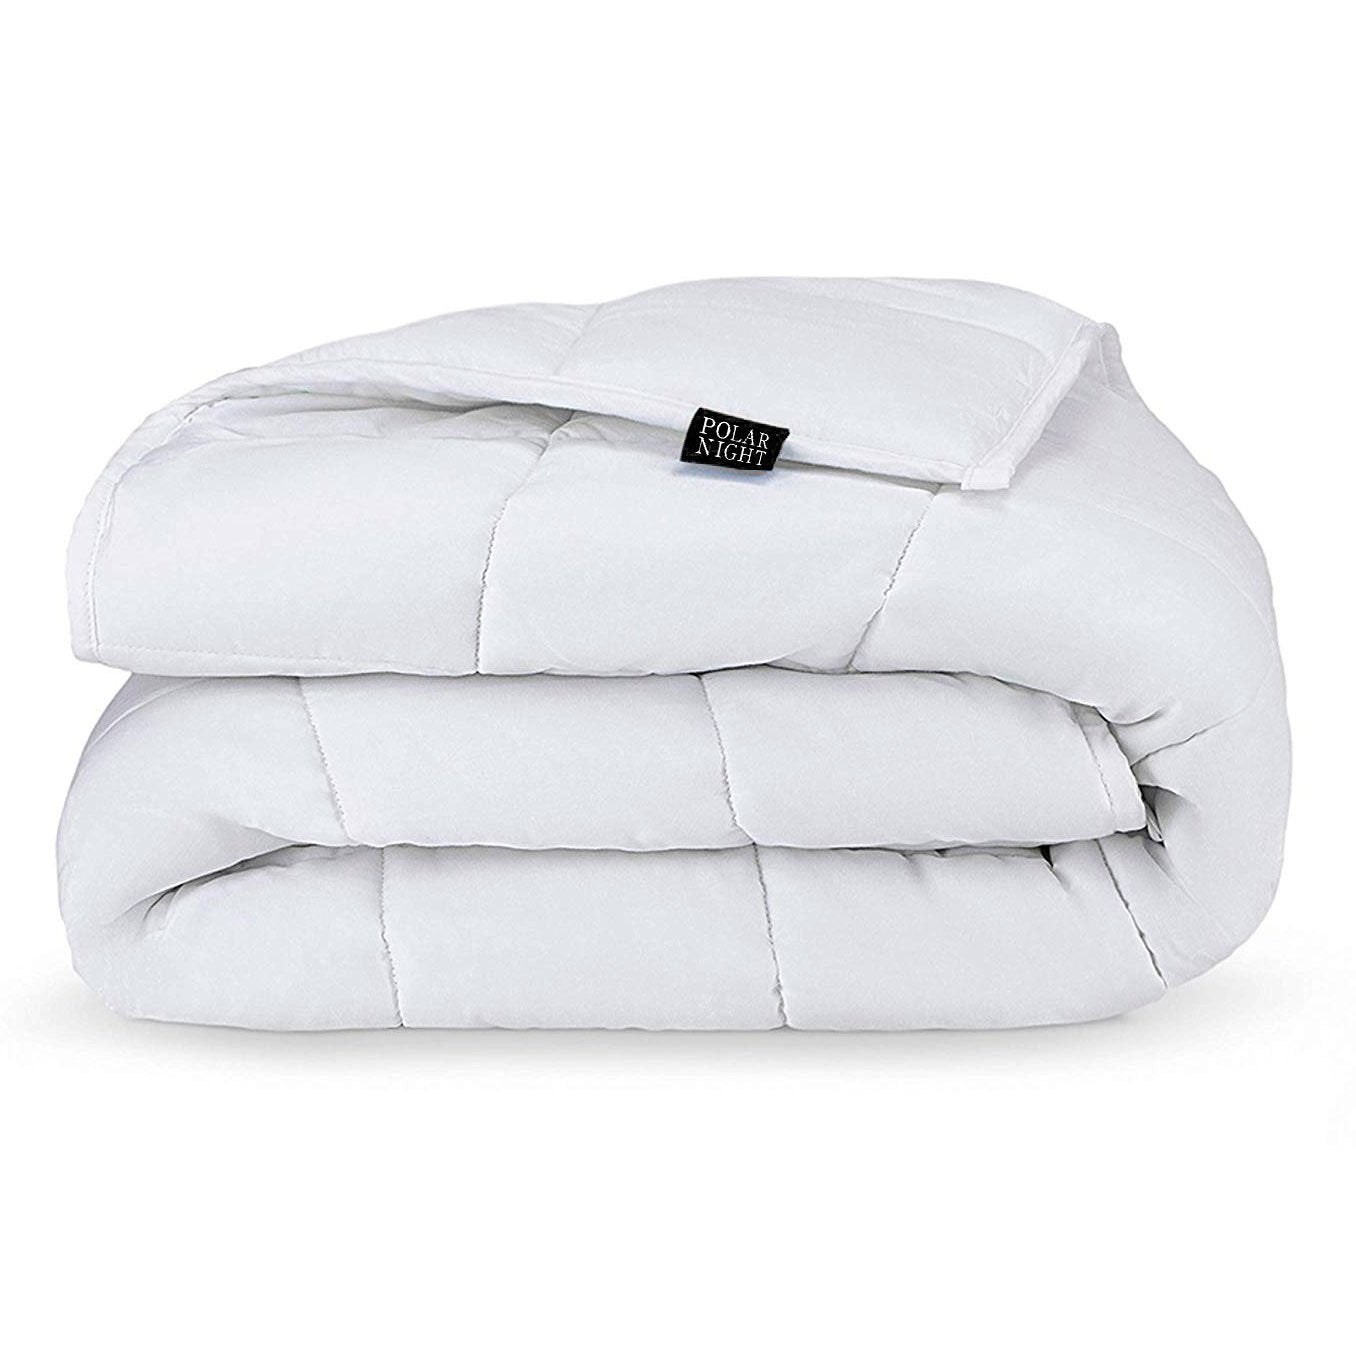 Утяжеленное одеяло Polar Night, хлопок 150х200 см